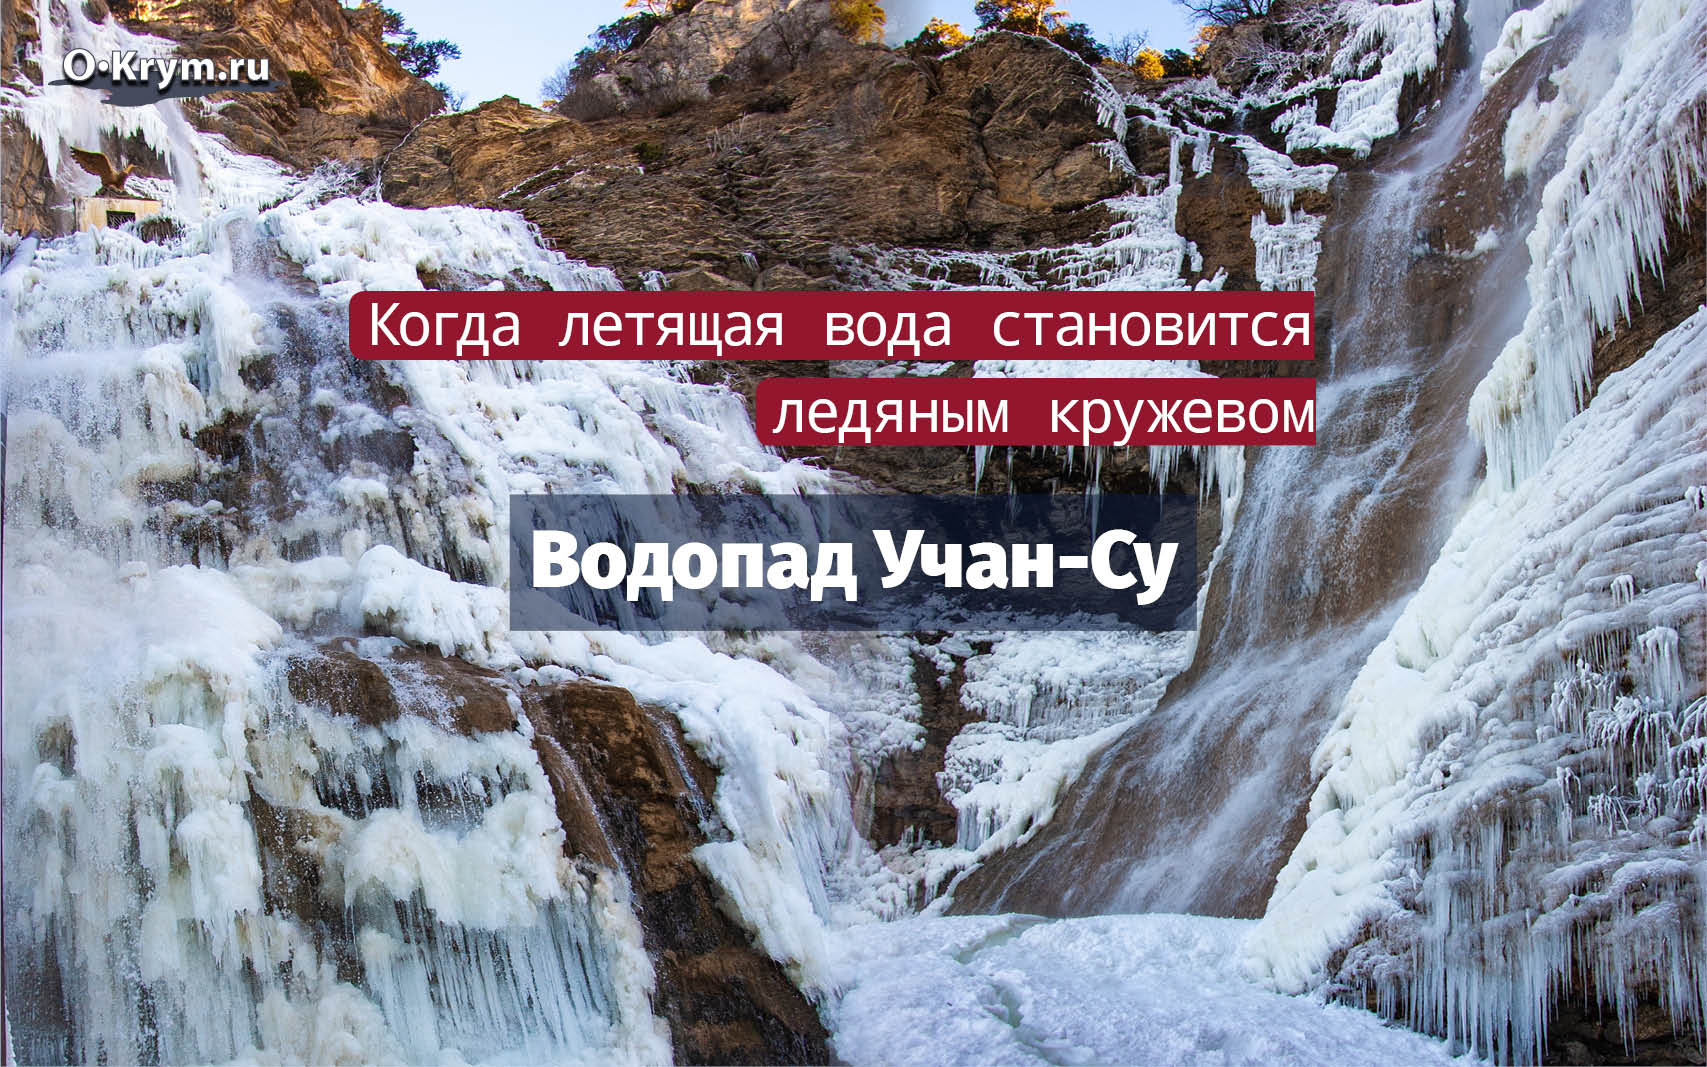 Водопад Учан-Су, Ялта, Крым